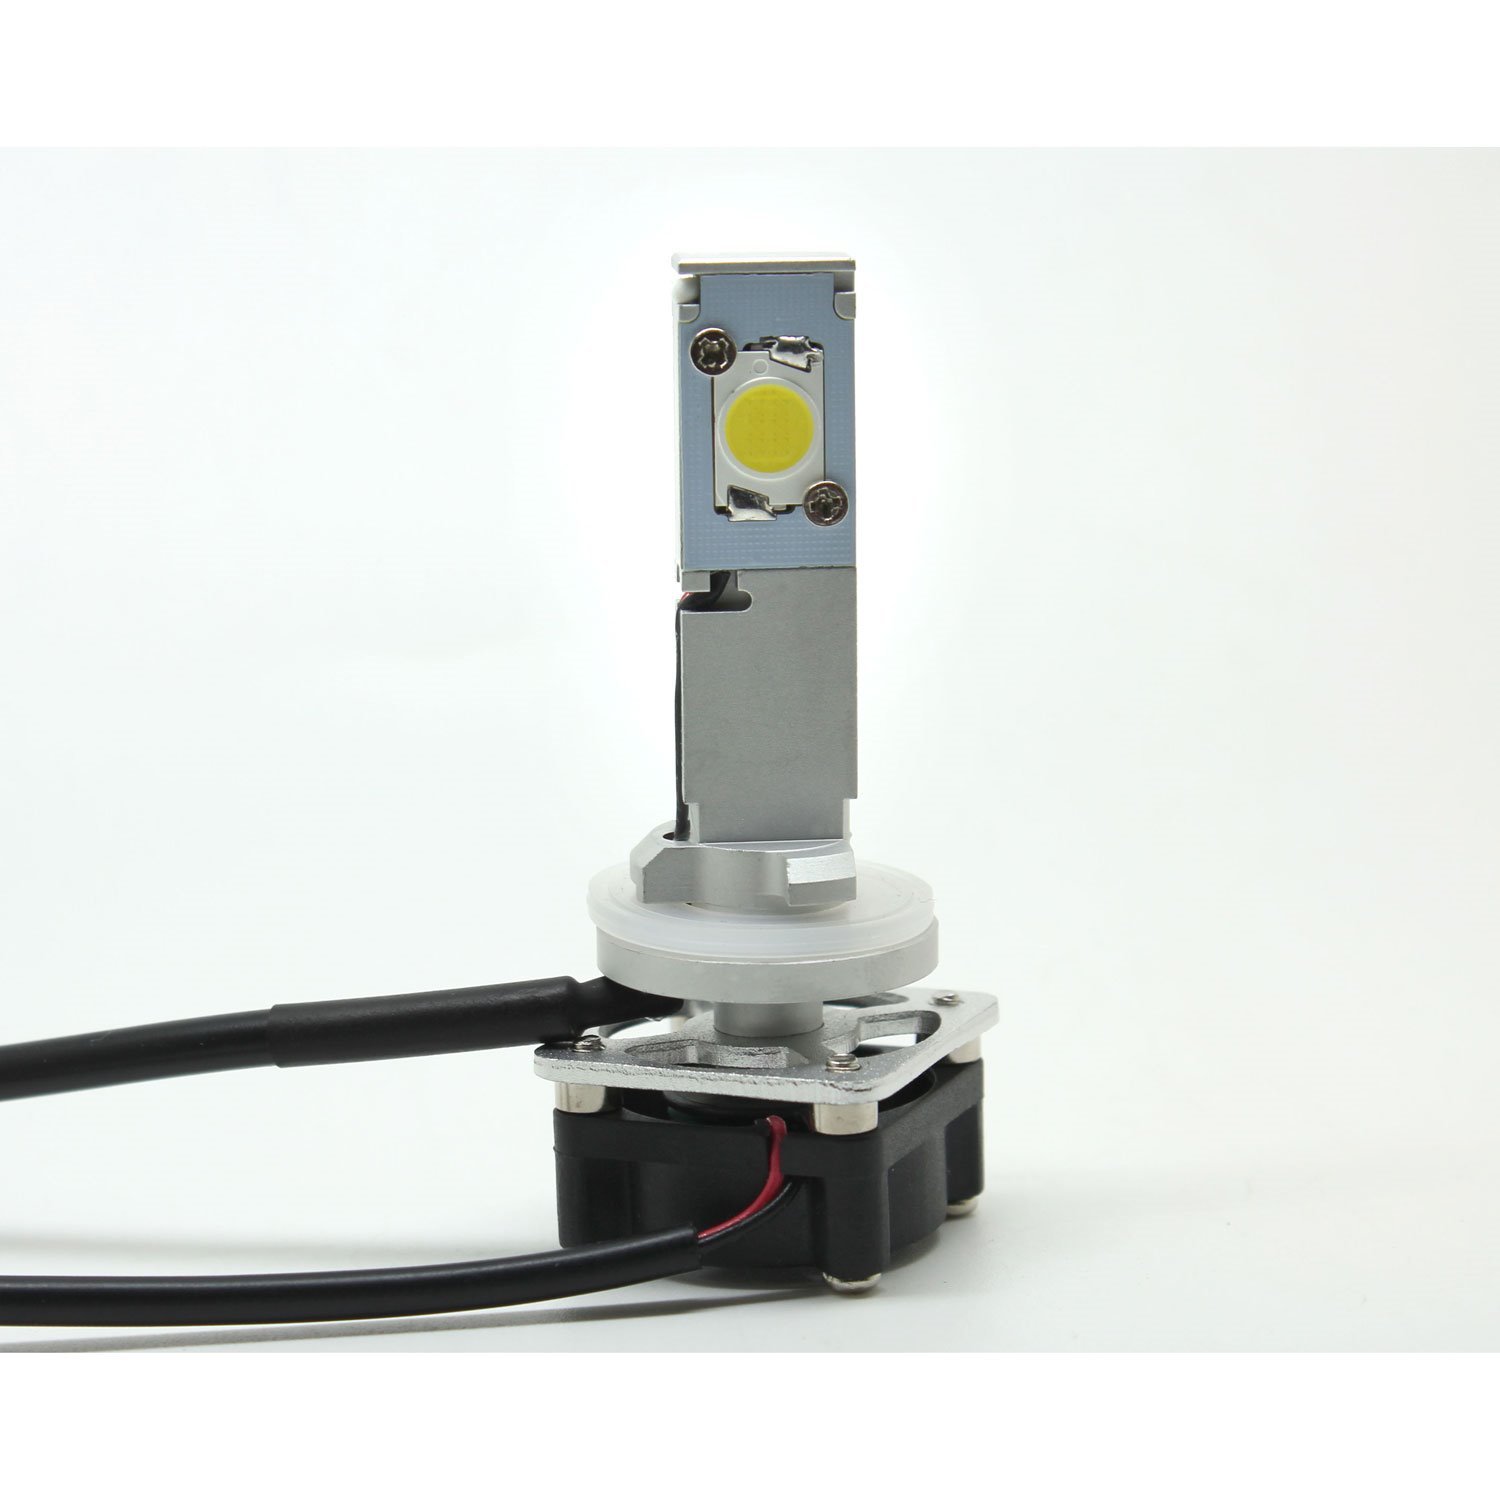 Cree XM-L2 LED Kit 880/893 Bulb Replacement